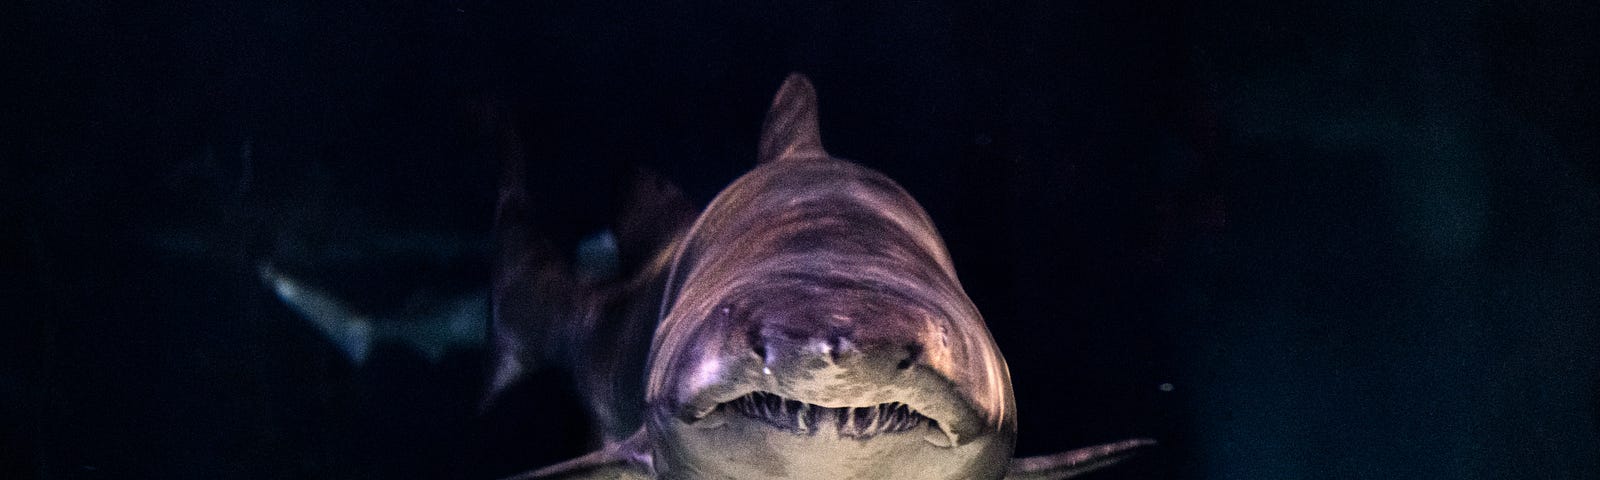 Close up of a shark’s face